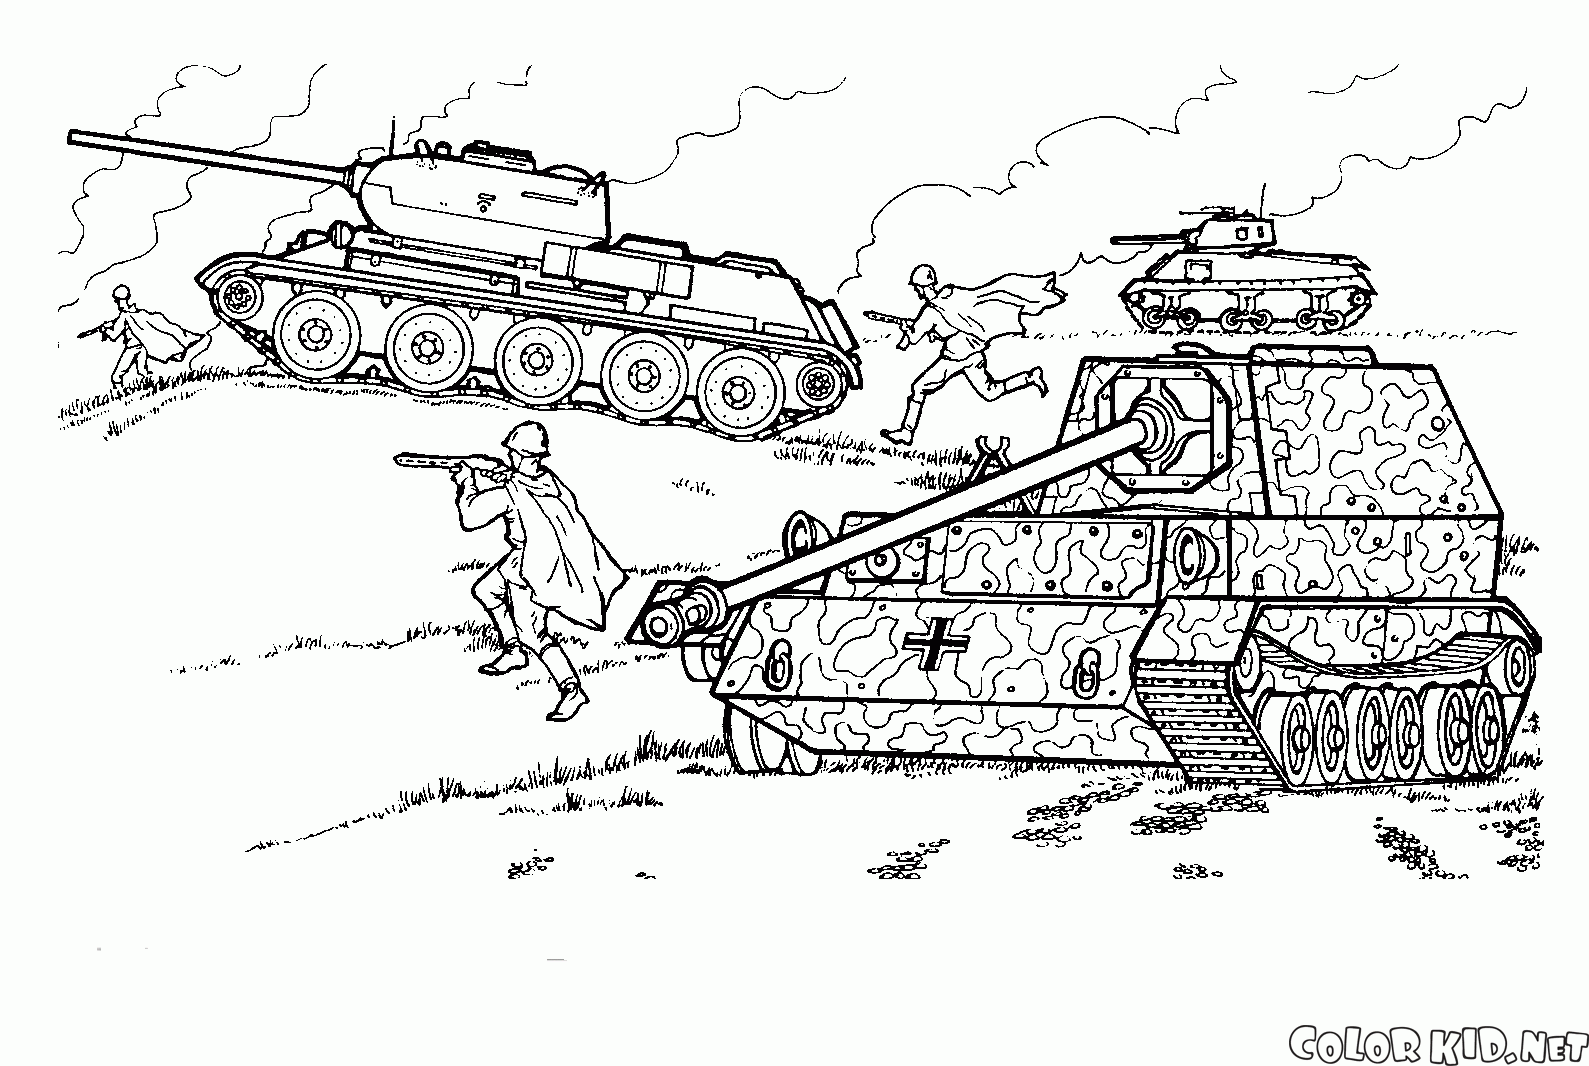 T-34 in una battaglia